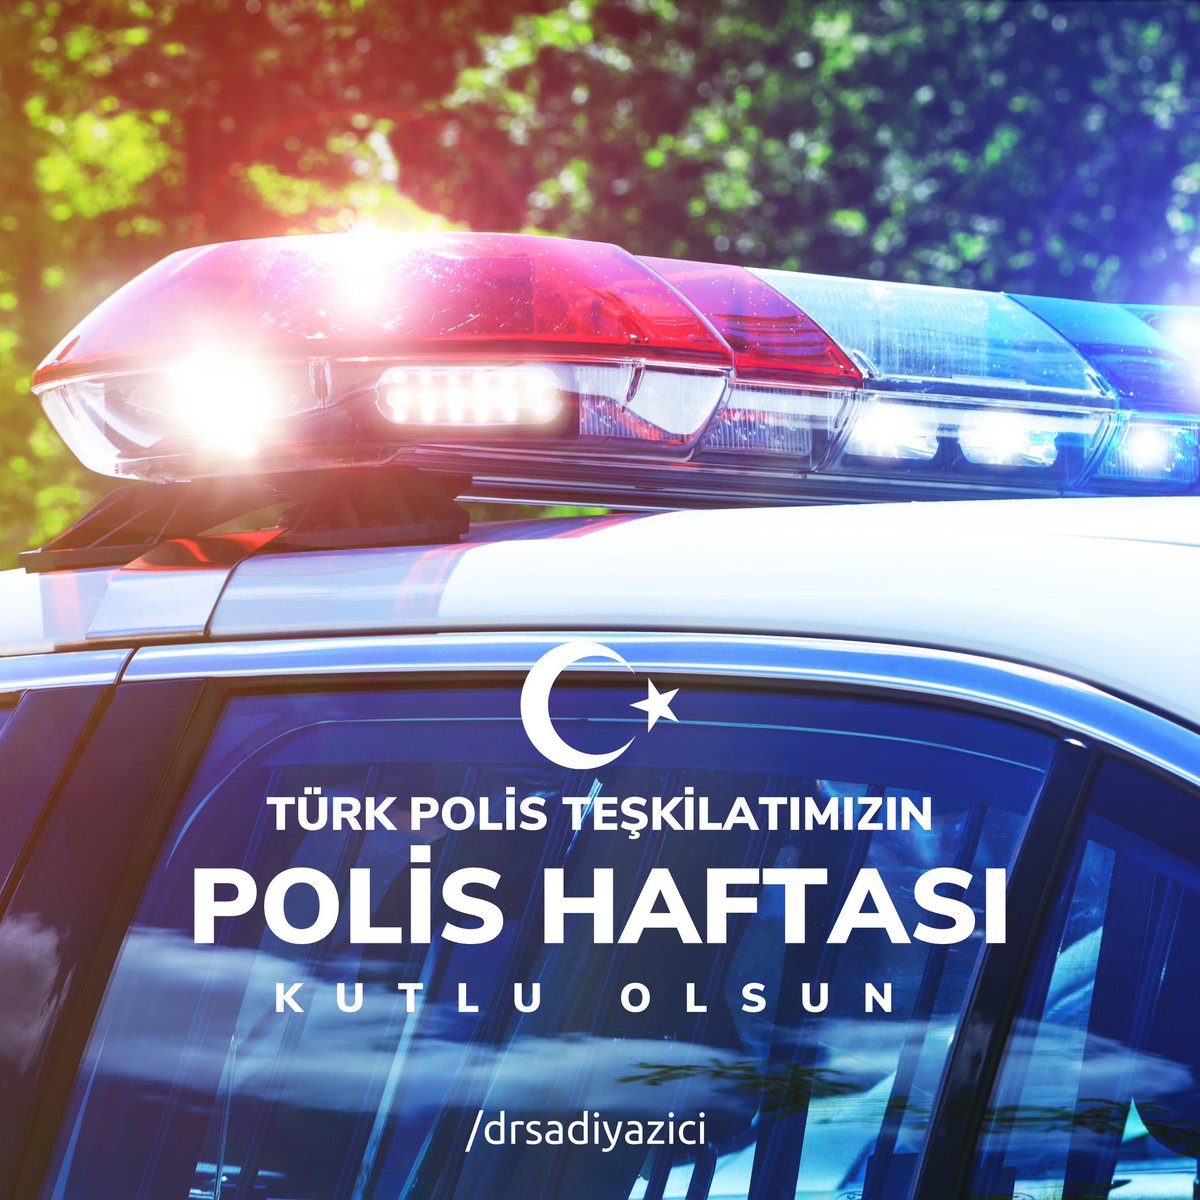 Ülkemizin dört bir köşesinde fedakarca çalışarak milletimizin huzur ve güvenliğini sağlayan Türk Polis Teşkilatı’nın Polis Haftası kutlu olsun.